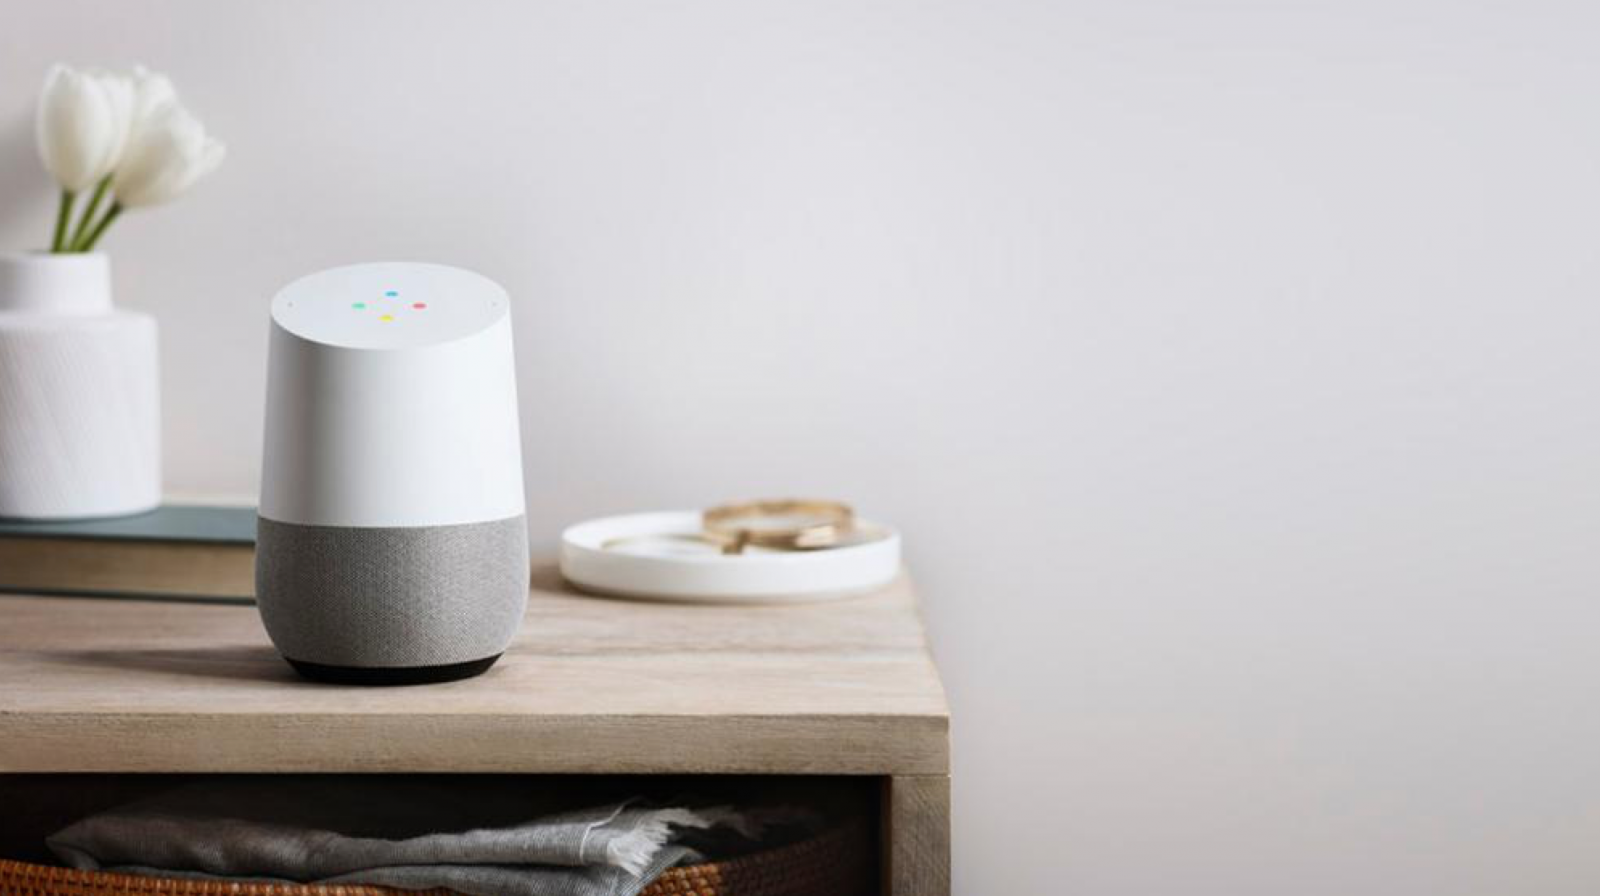 Doanh số loa thông minh Google Home lần đầu vượt Echo